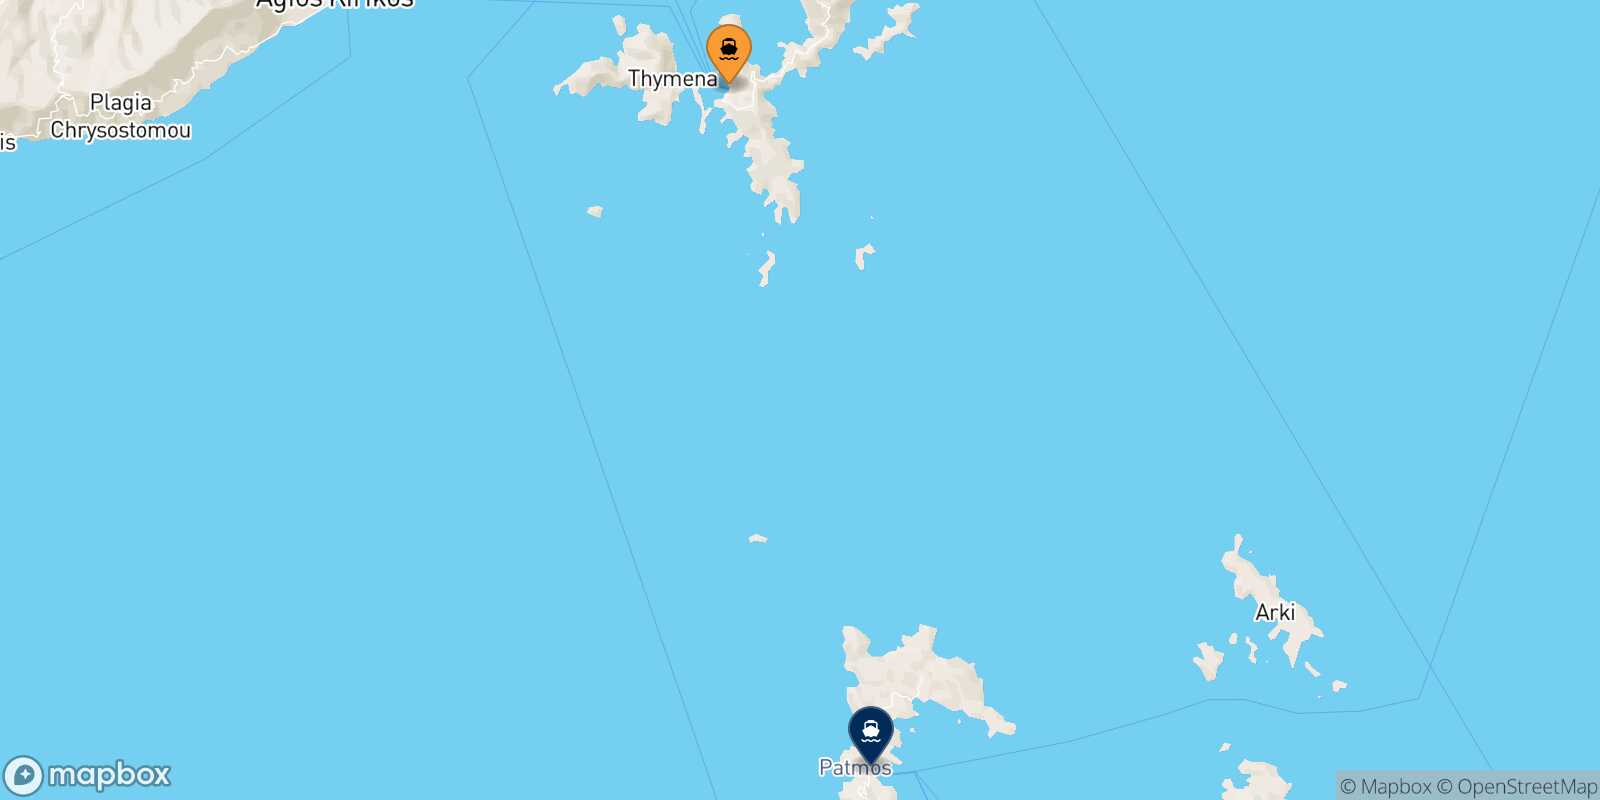 Mapa de la ruta Fourni Patmos